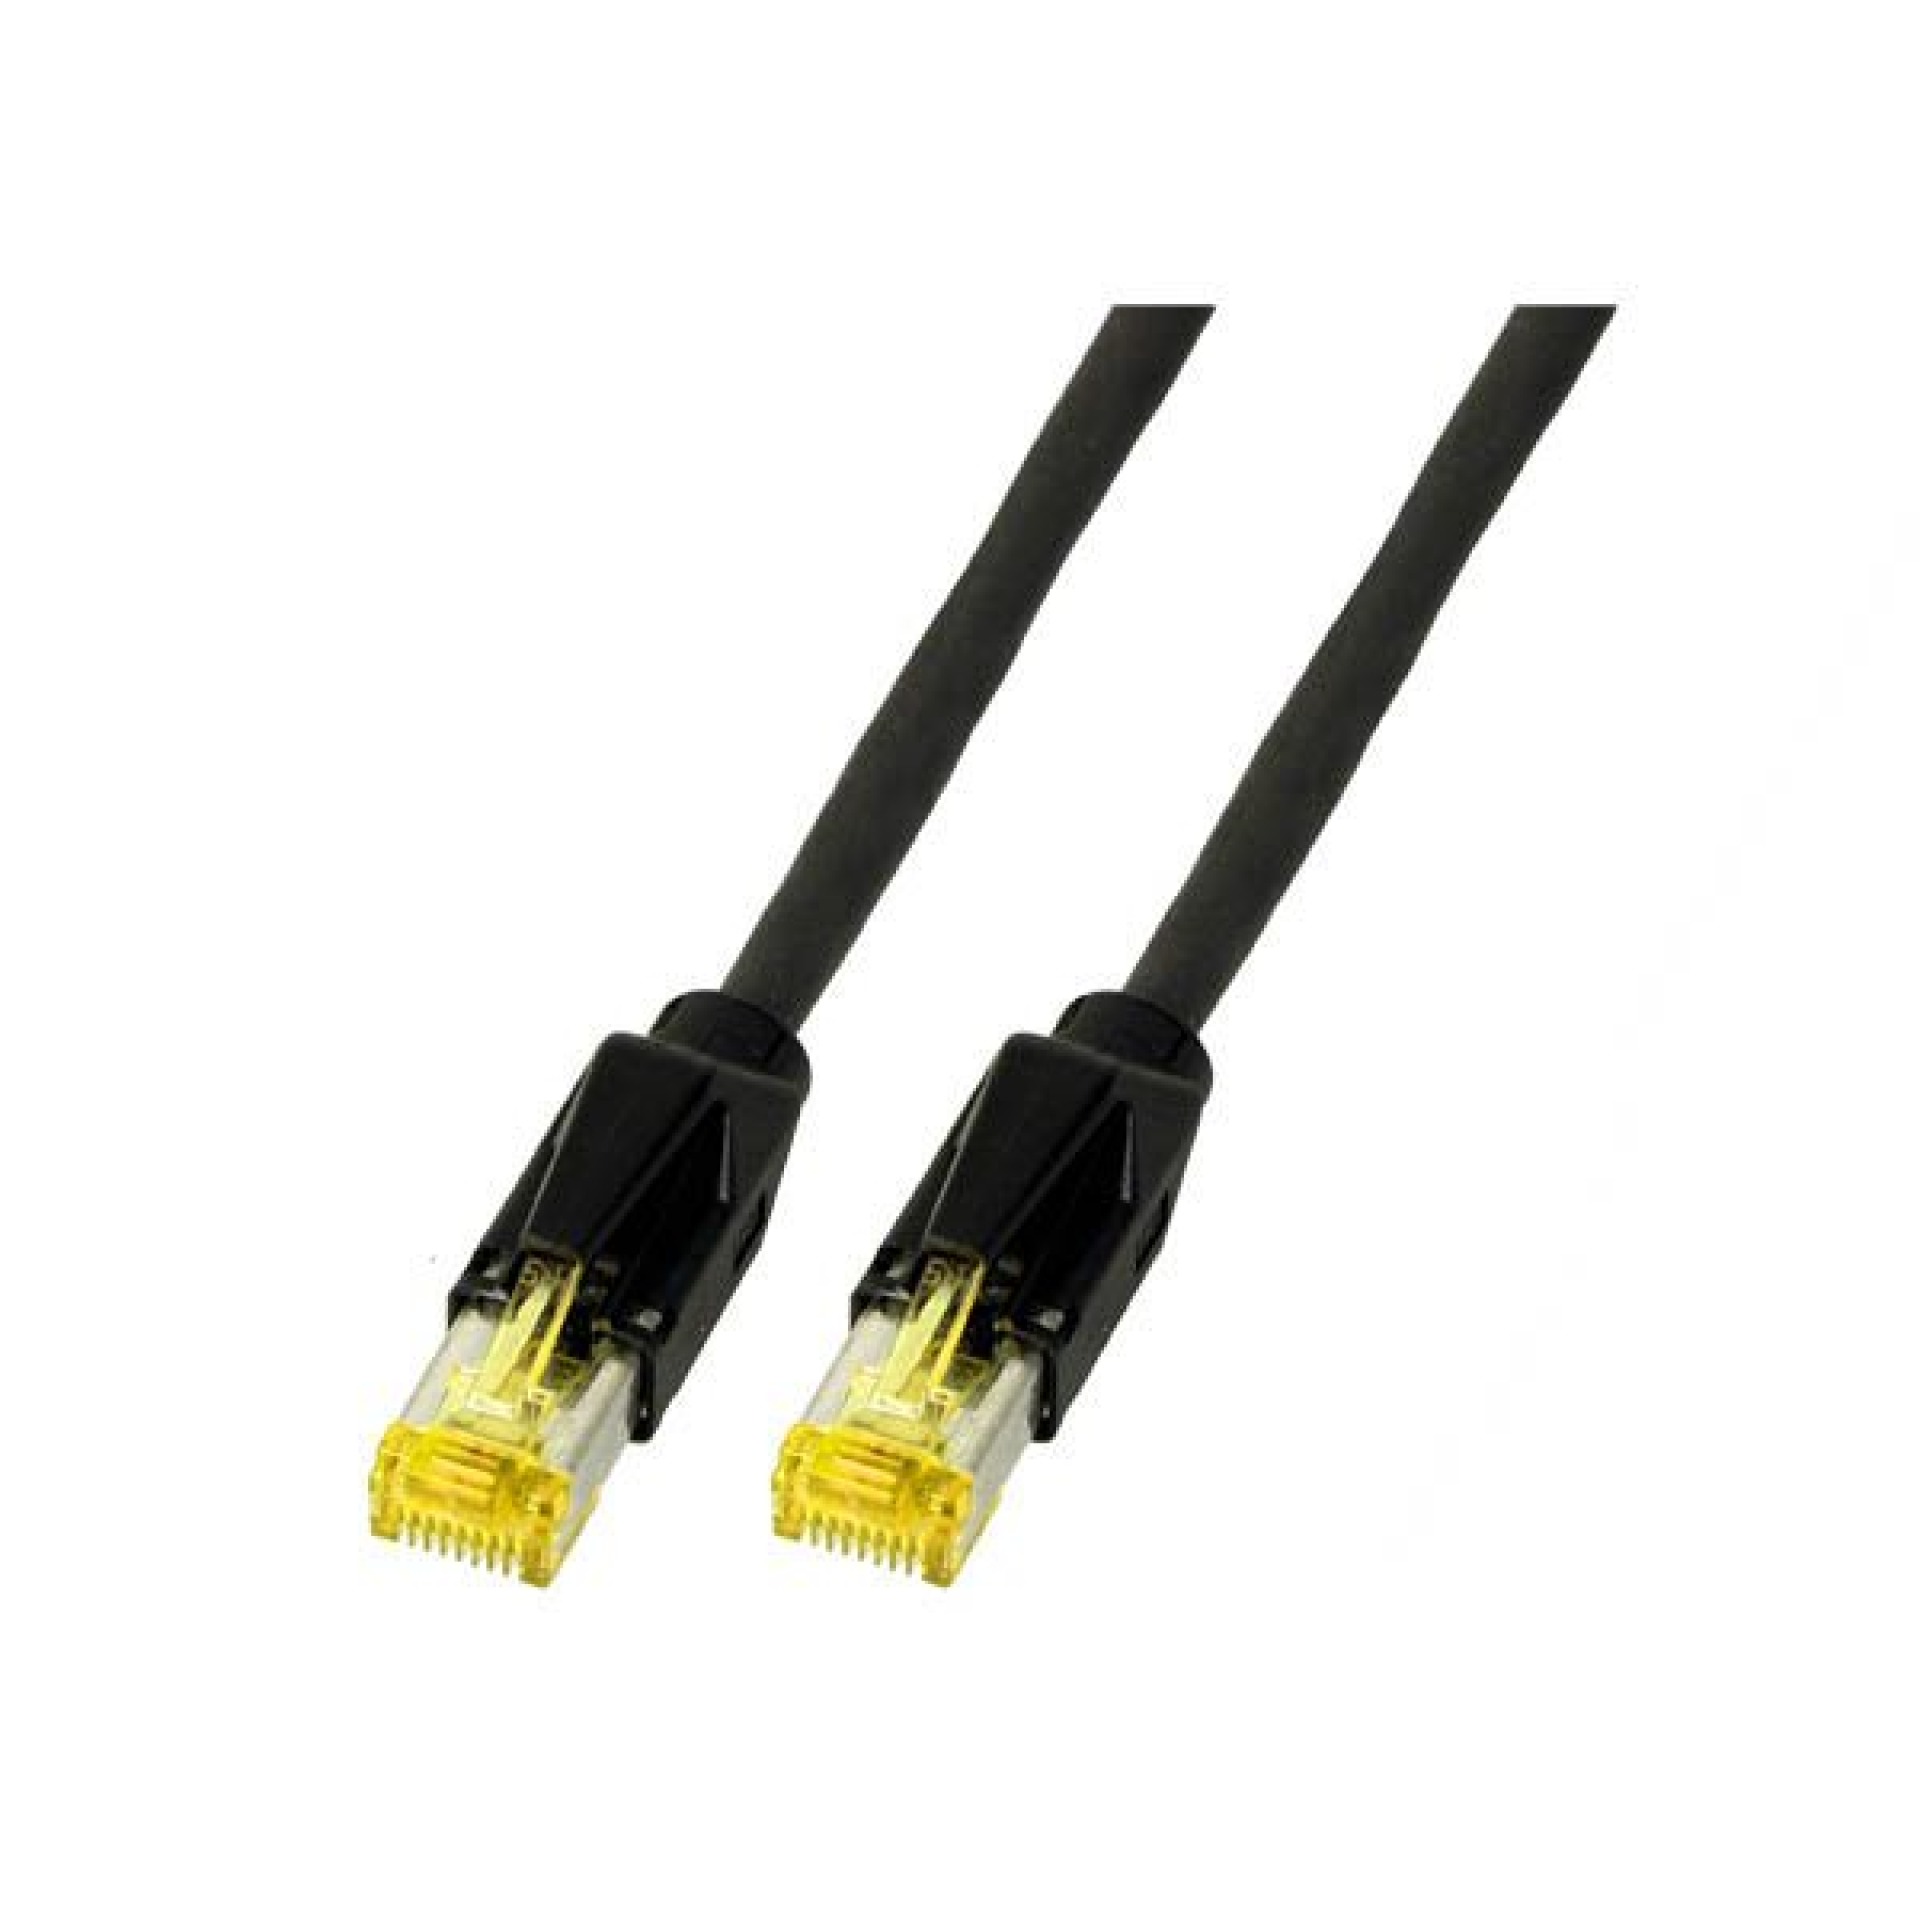 RJ45 Patch cable S/FTP, Cat.6A, TM31, Dätwyler 7702, 0,5m, black